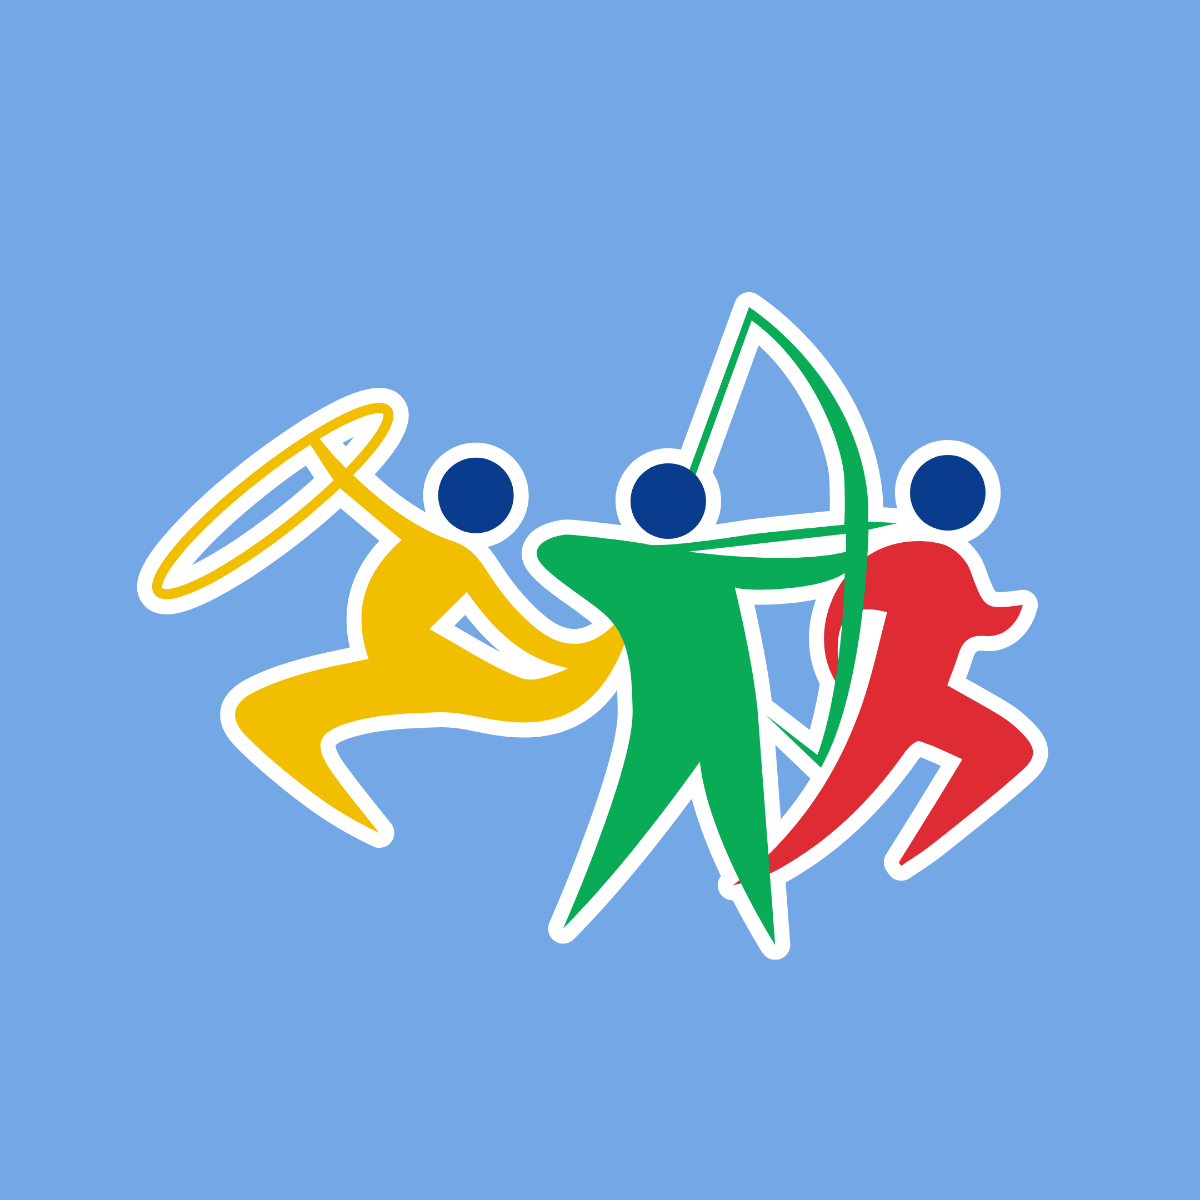 Mini Olympics Sticker